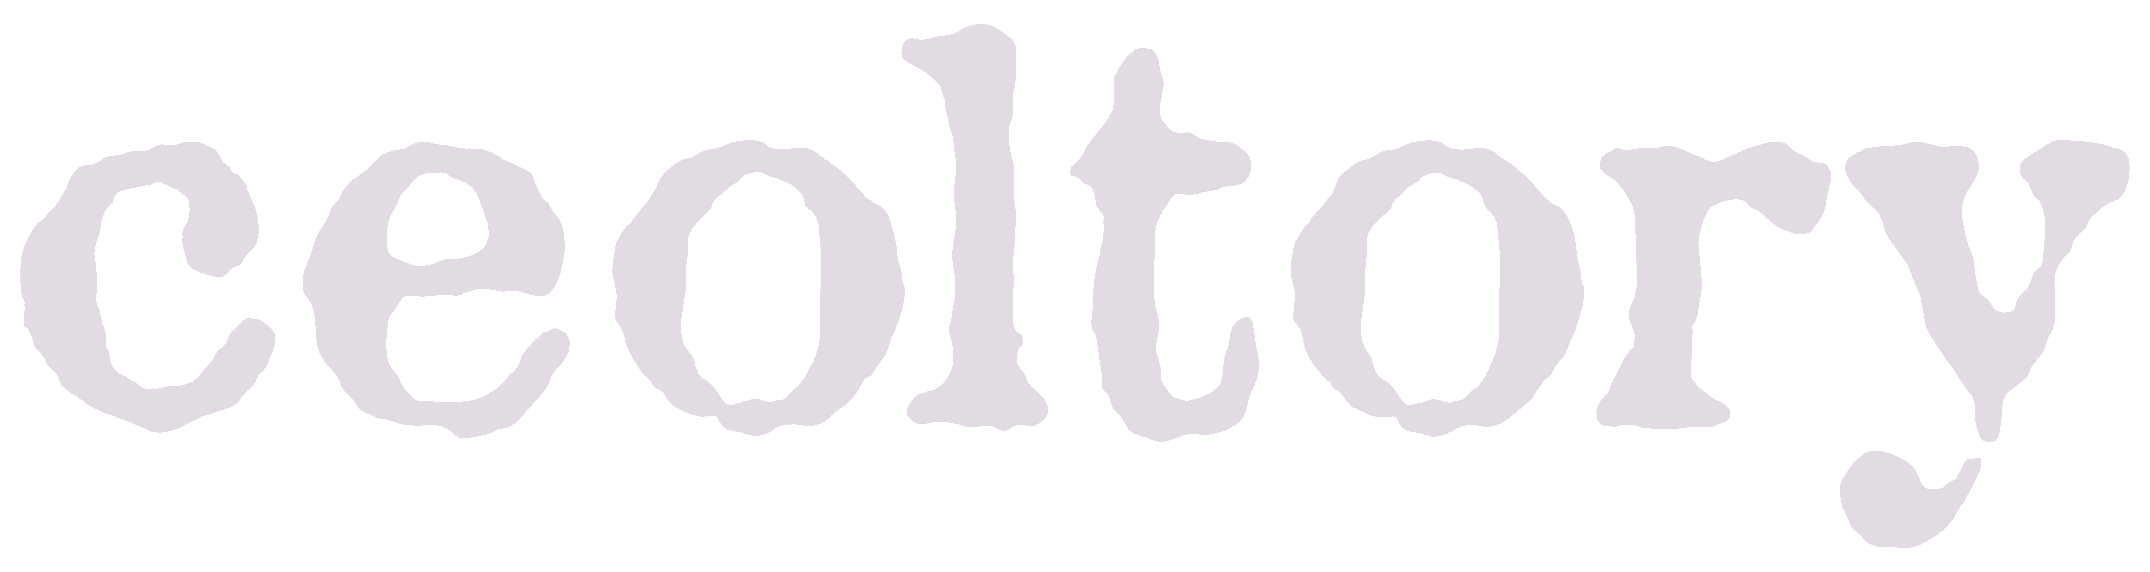 ceoltory Logo